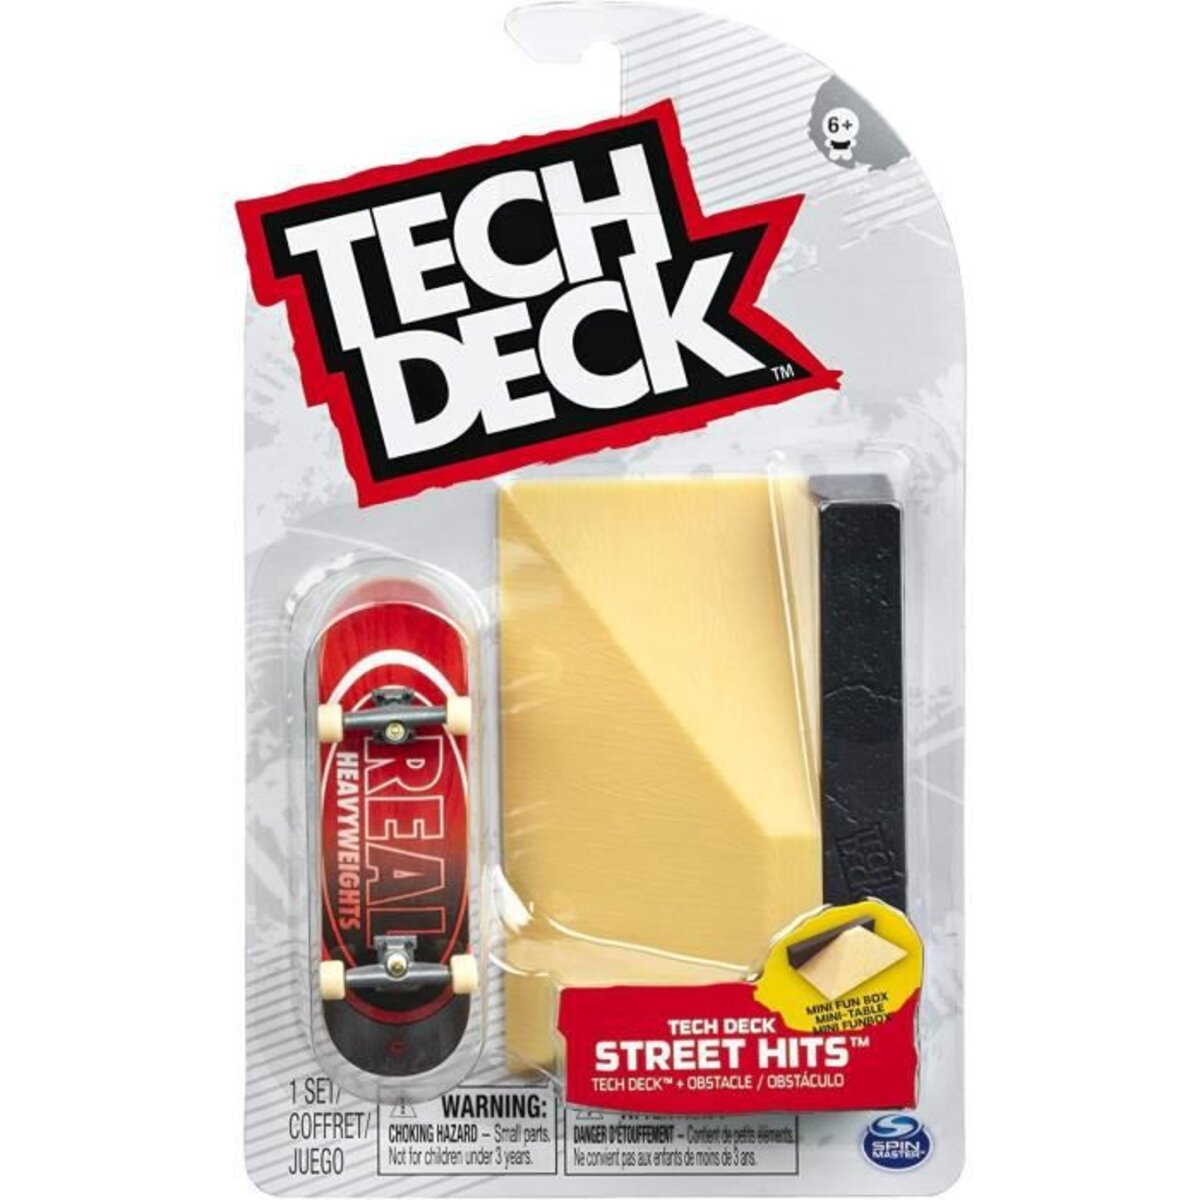 Tech deck - street hits - planches a roulettes finger board a personnaliser  - 6053096 - modele aléatoire - La Poste